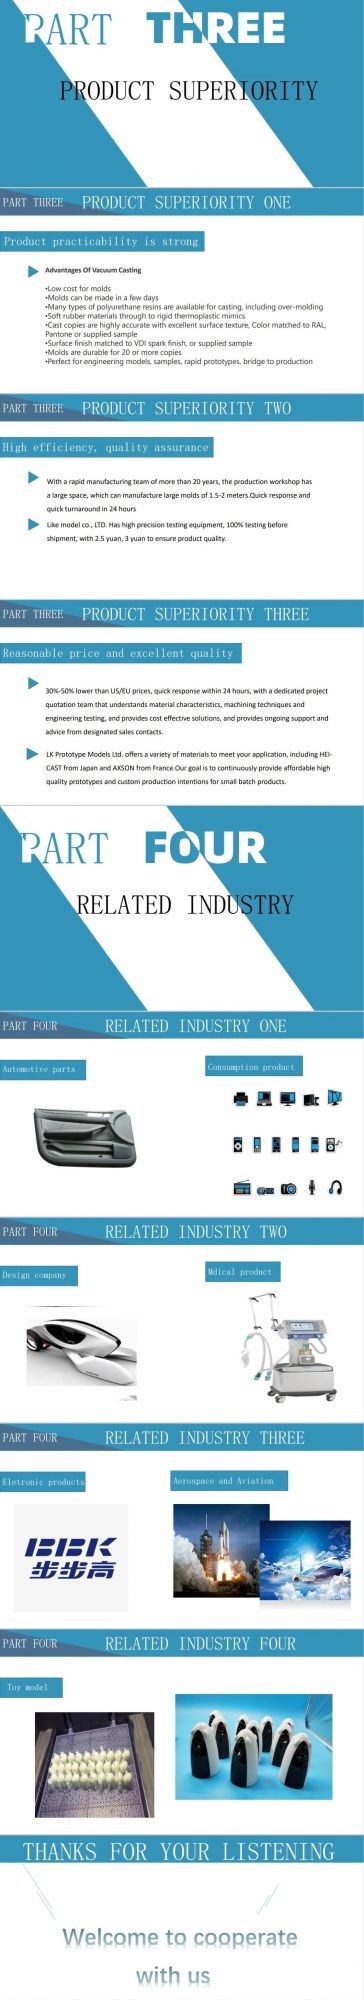 Custom Precision Aluminum Parts Exact Specification Rapid Prototype/CNC Machining/Laser Parts